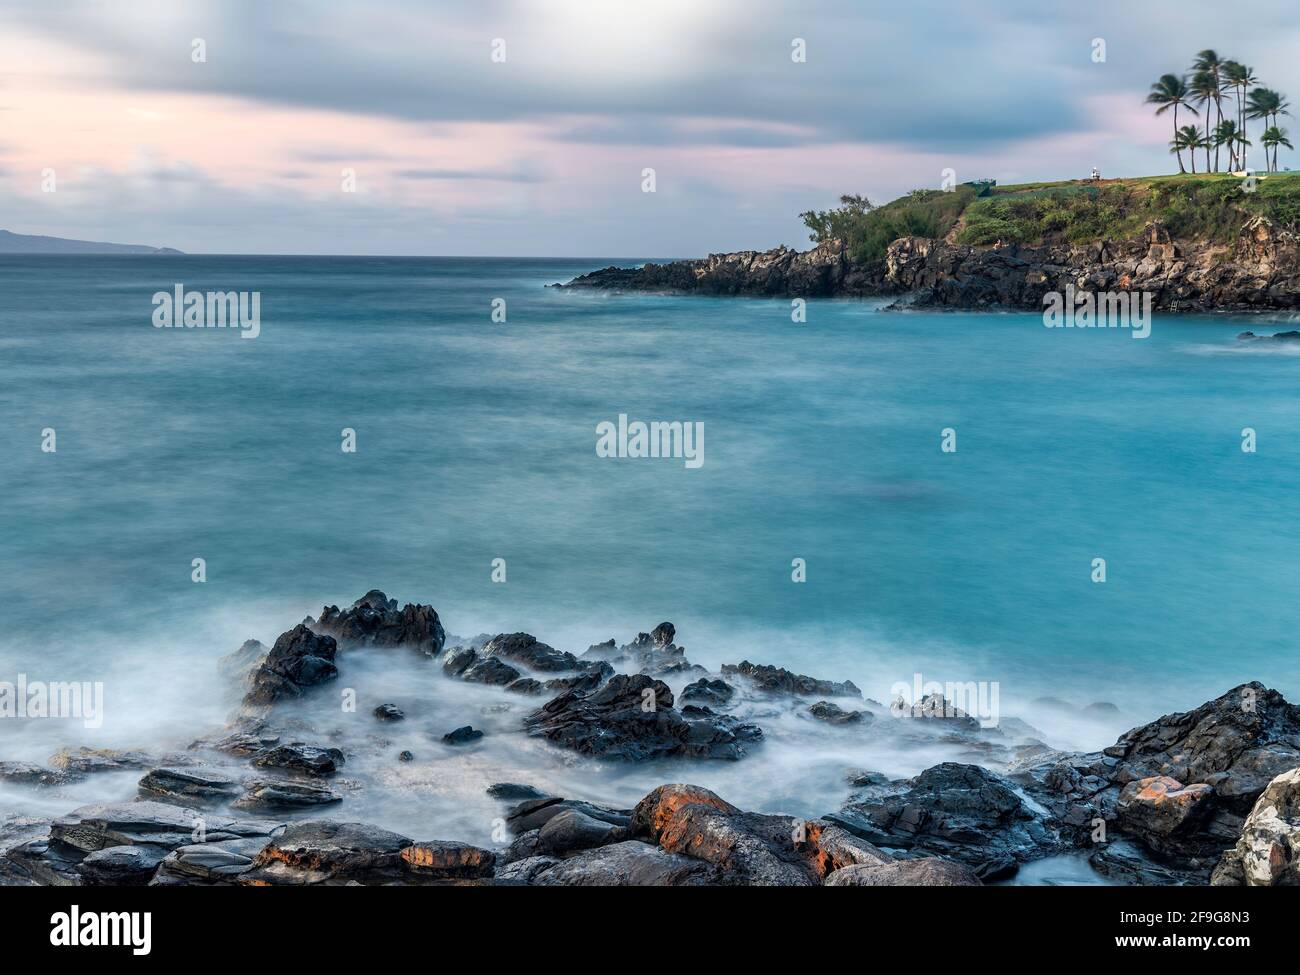 Kapalua Bay, West Maui, Hawaii, USA Stock Photo